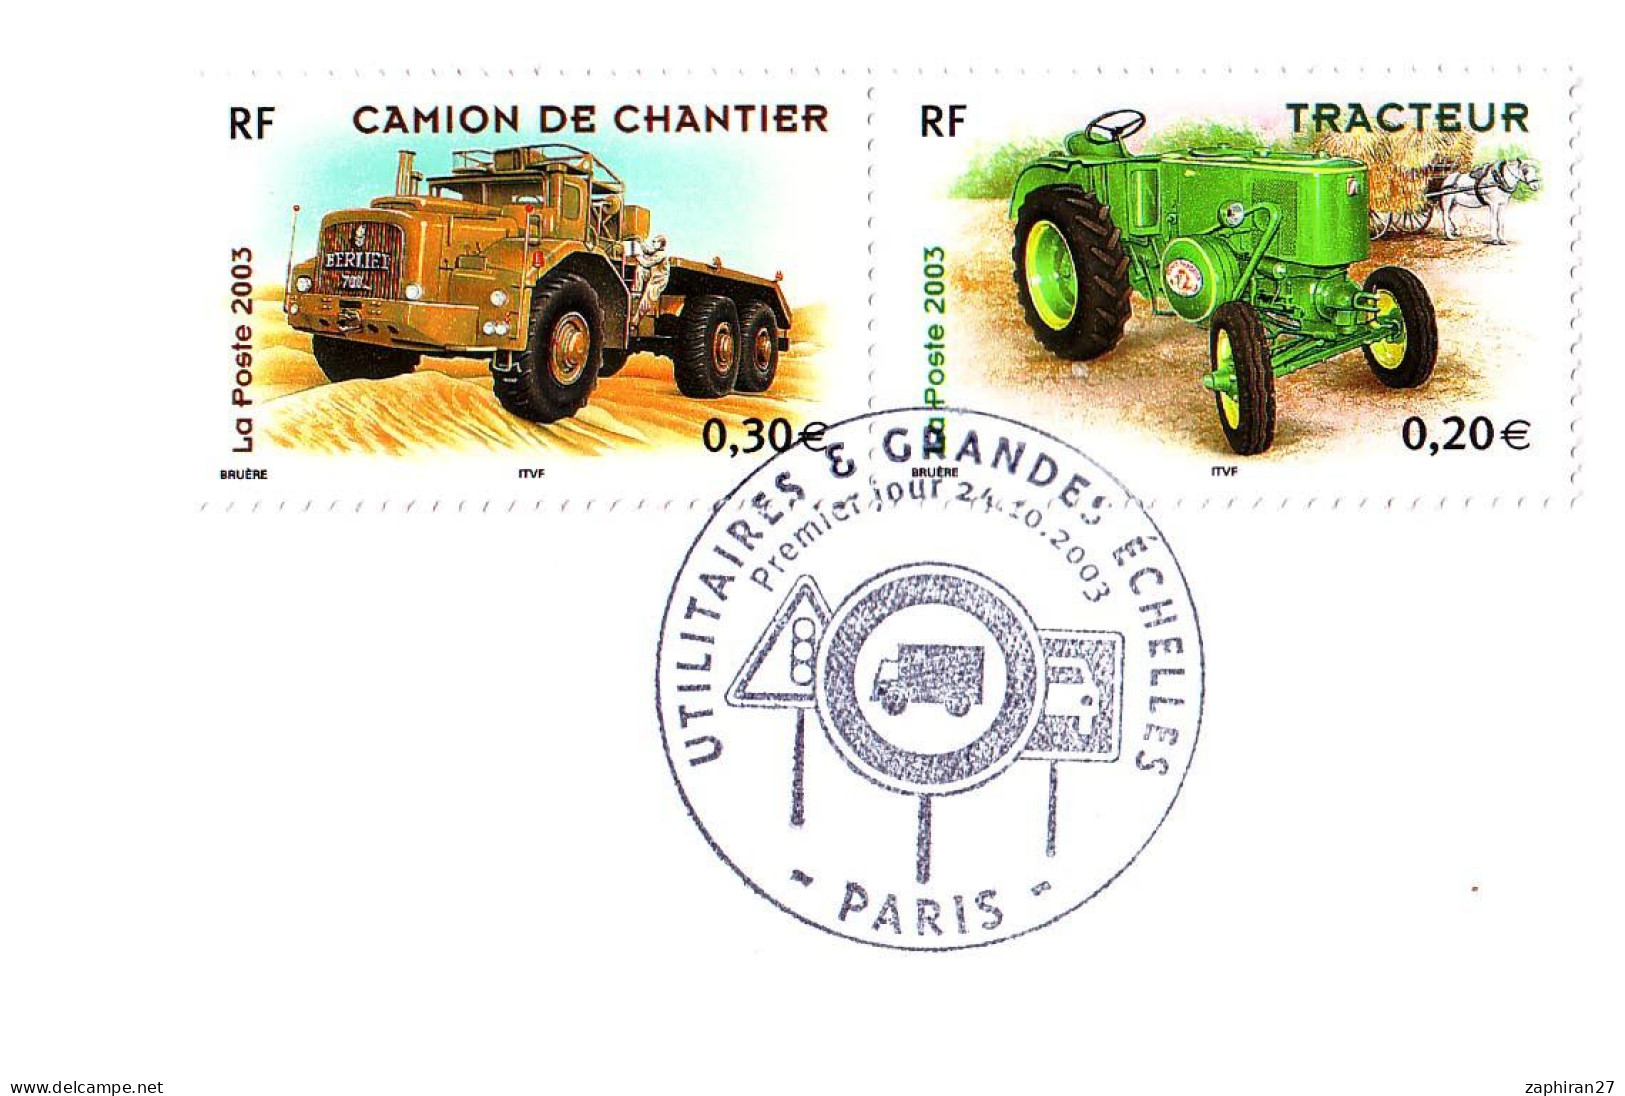 CAT TRANSORT : PARIS UTILITAIRES ET GRANDES ECHELLES / CAMION DE CHANTIER ET TRACTEUR (24-10-2003) #517# - Camiones